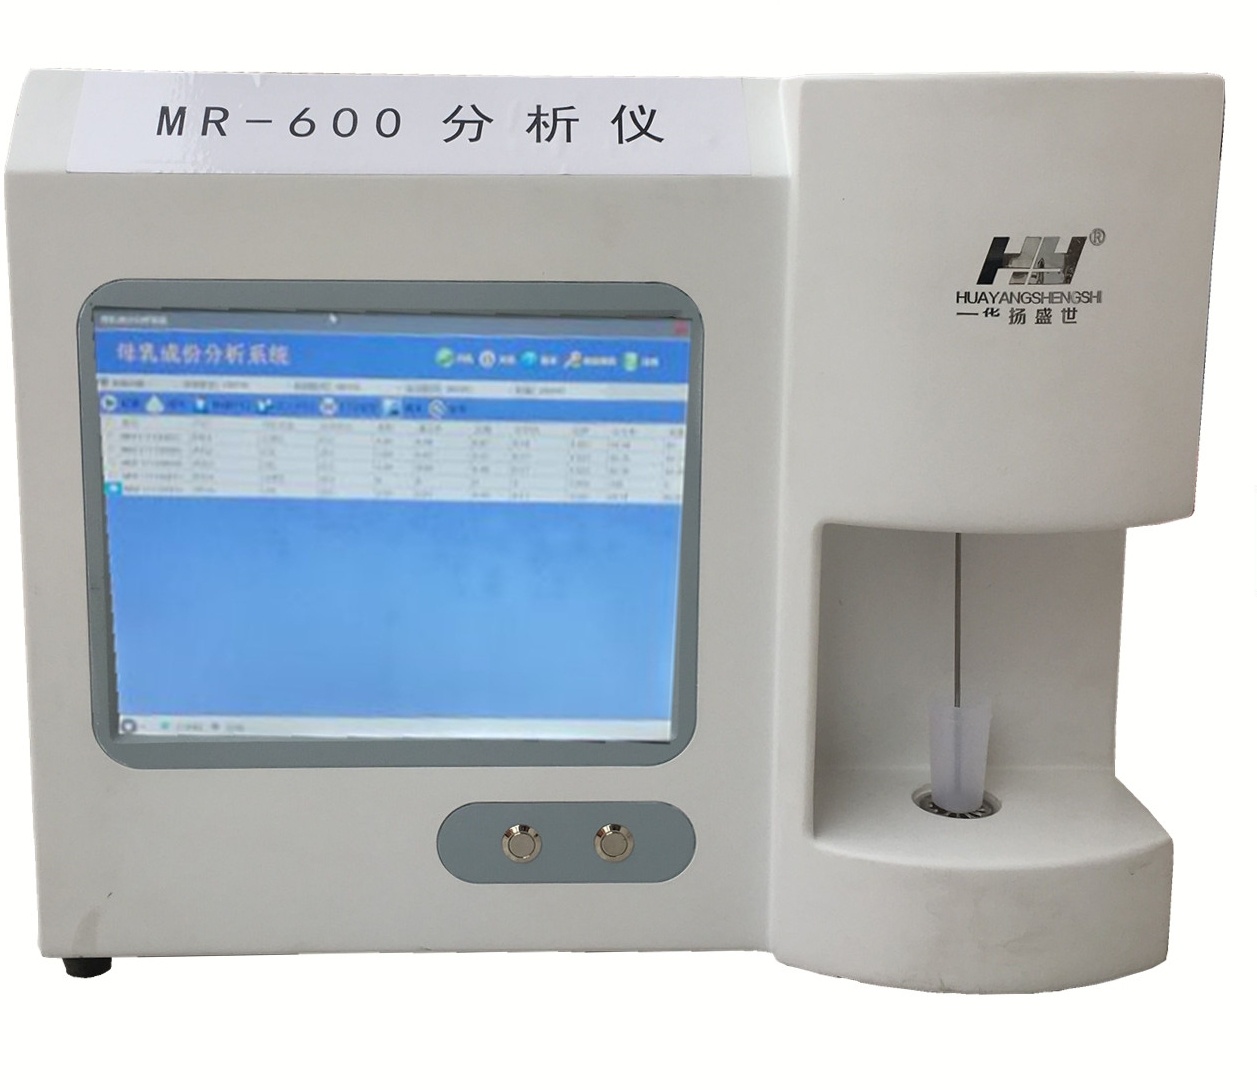 华扬盛世HY-MR600母乳分析仪